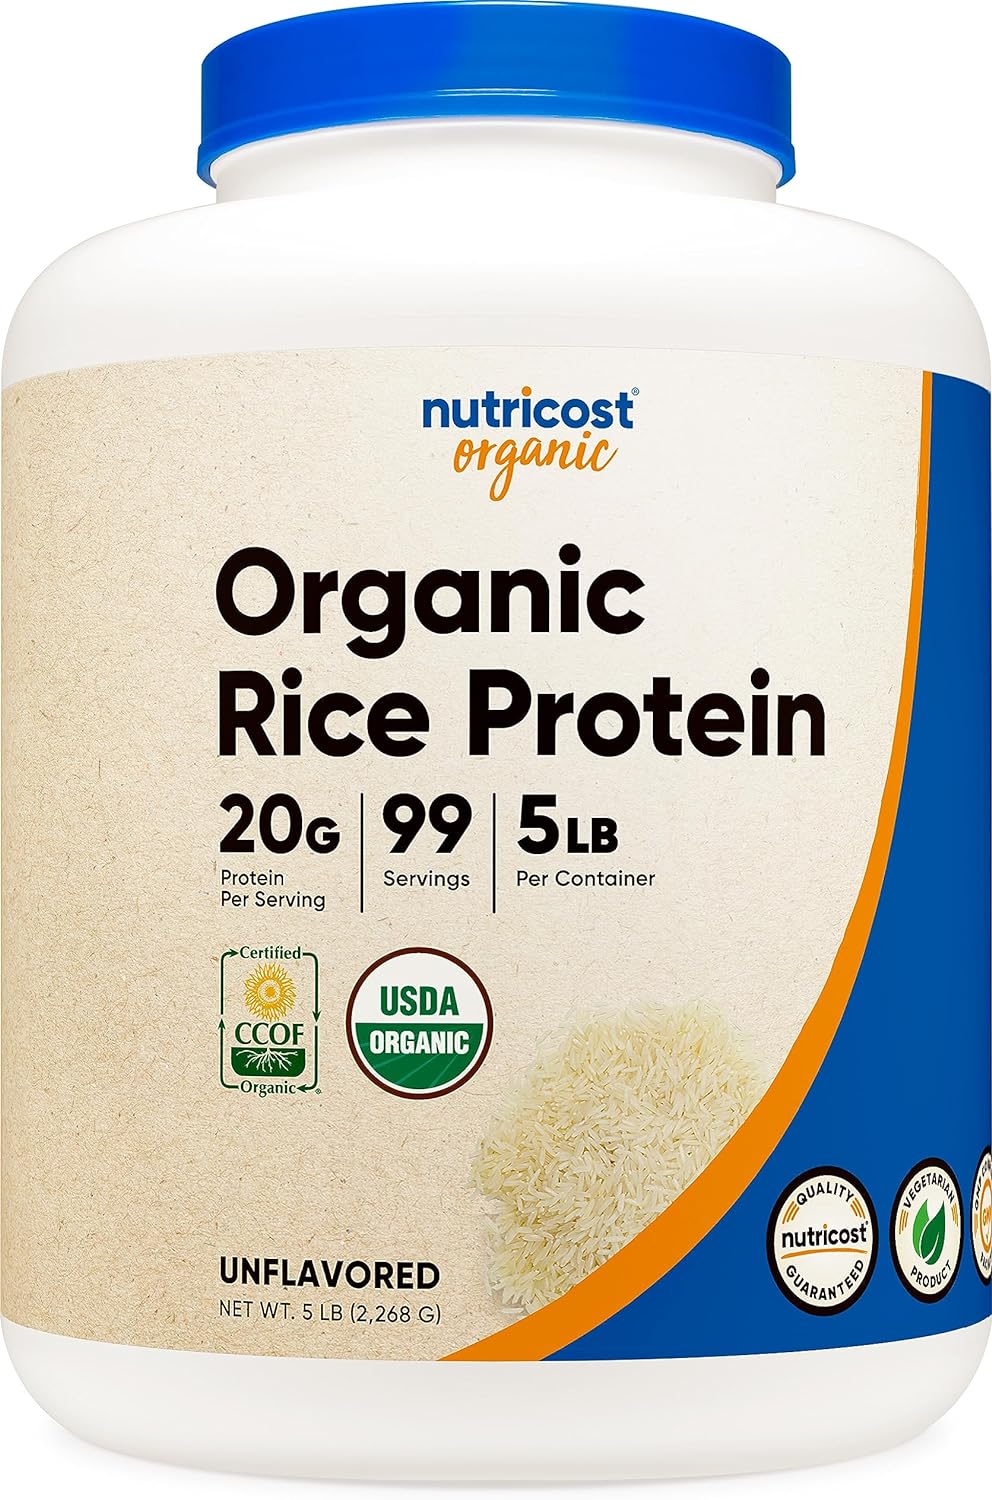 Nutricost Organic Rice Protein Powder 5s (Unavored) - Certified USDA Organic, 20G of Rice Protein Per Serv, Non-GMO